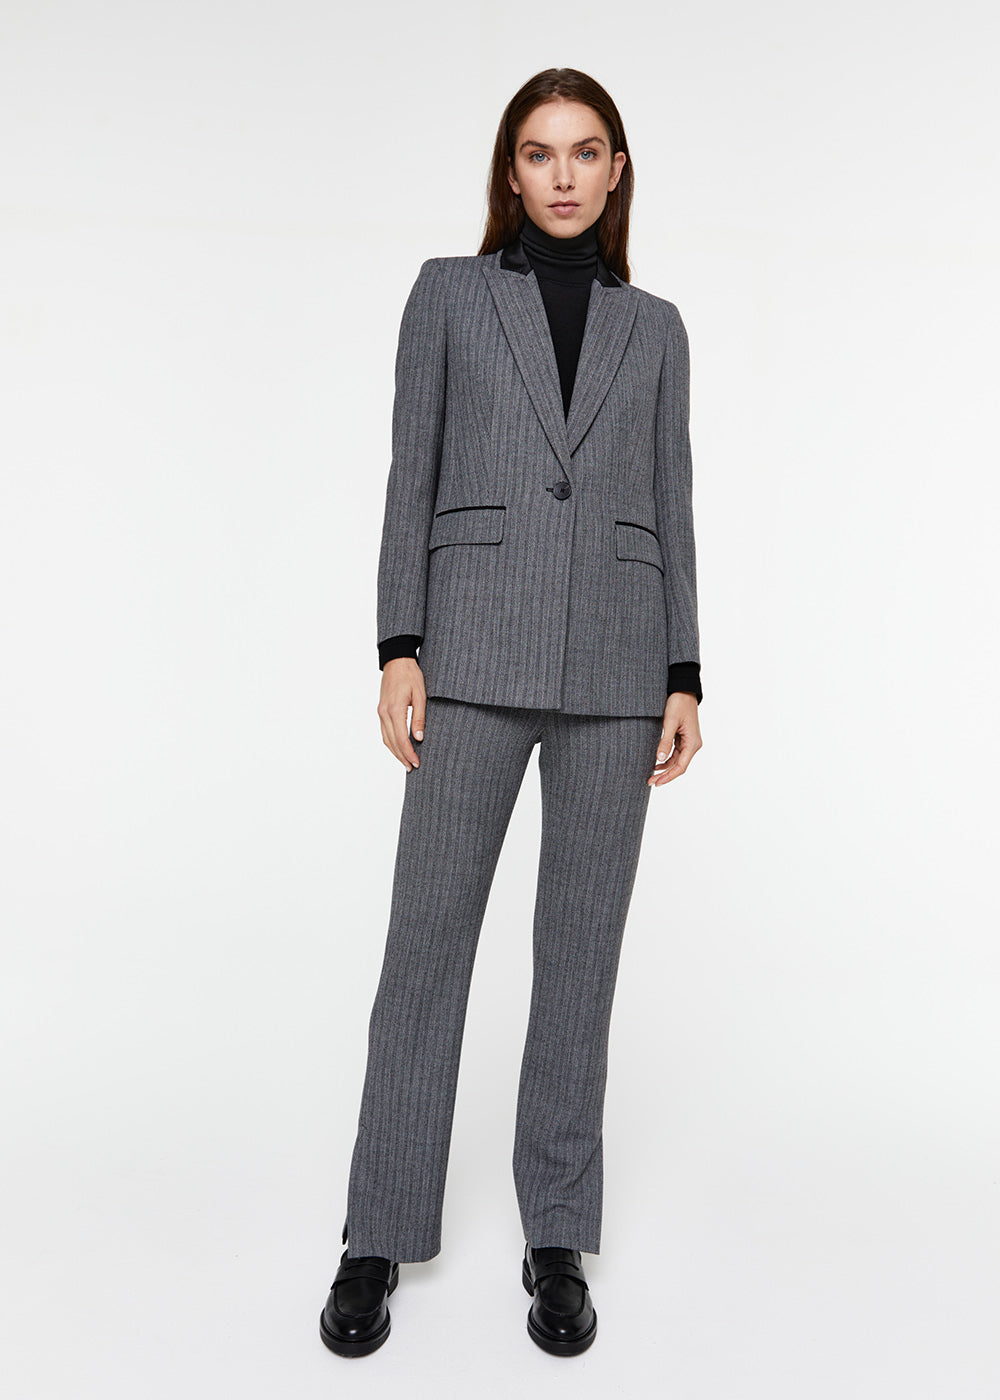 total look ensemble veste blazer pantalon droit jacquard chevron gris